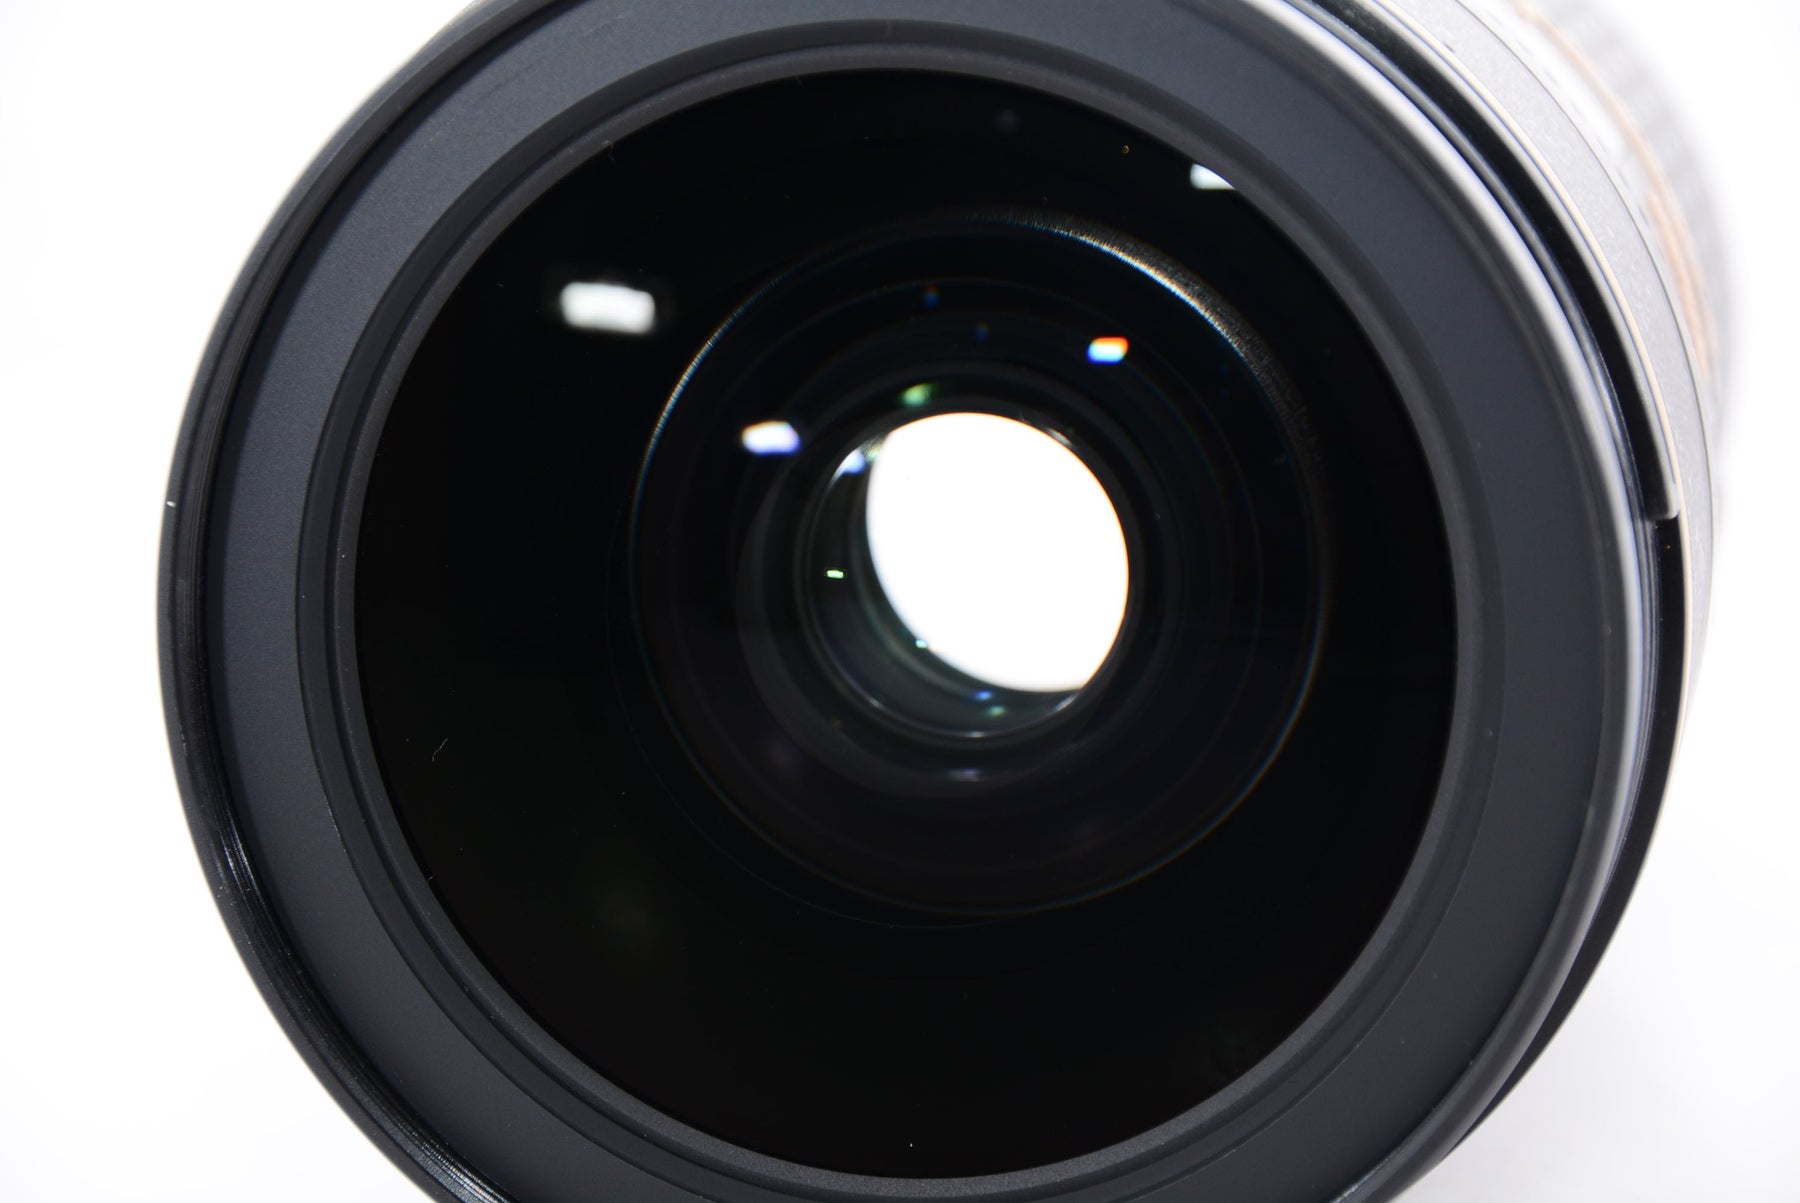 【外観特上級】Nikon 標準ズームレンズAF-S NIKKOR 24-70mm f/2.8E ED VR フルサイズ対応